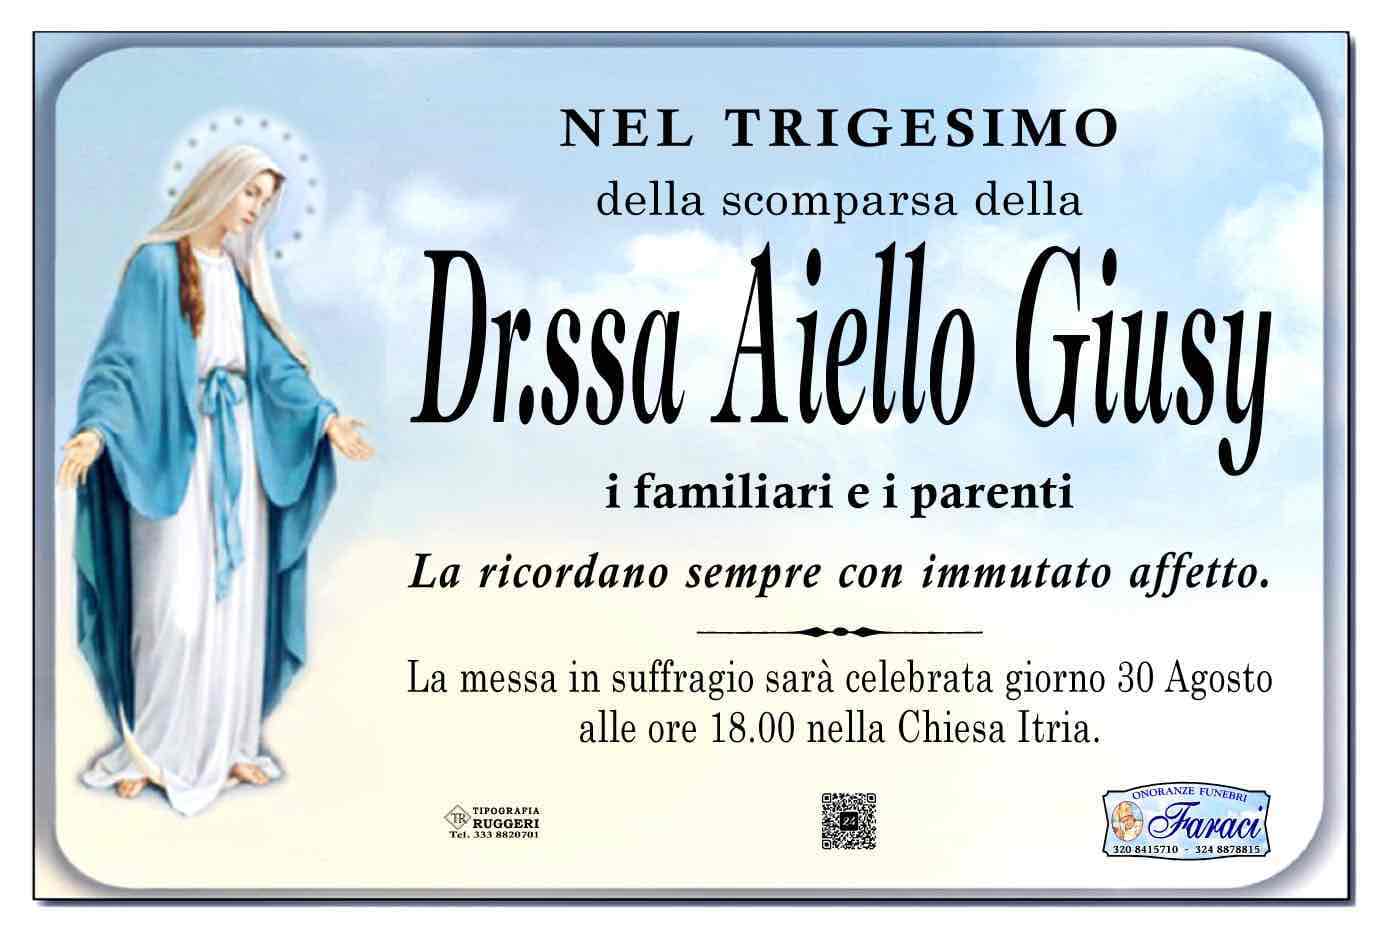 Giuseppa Aiello